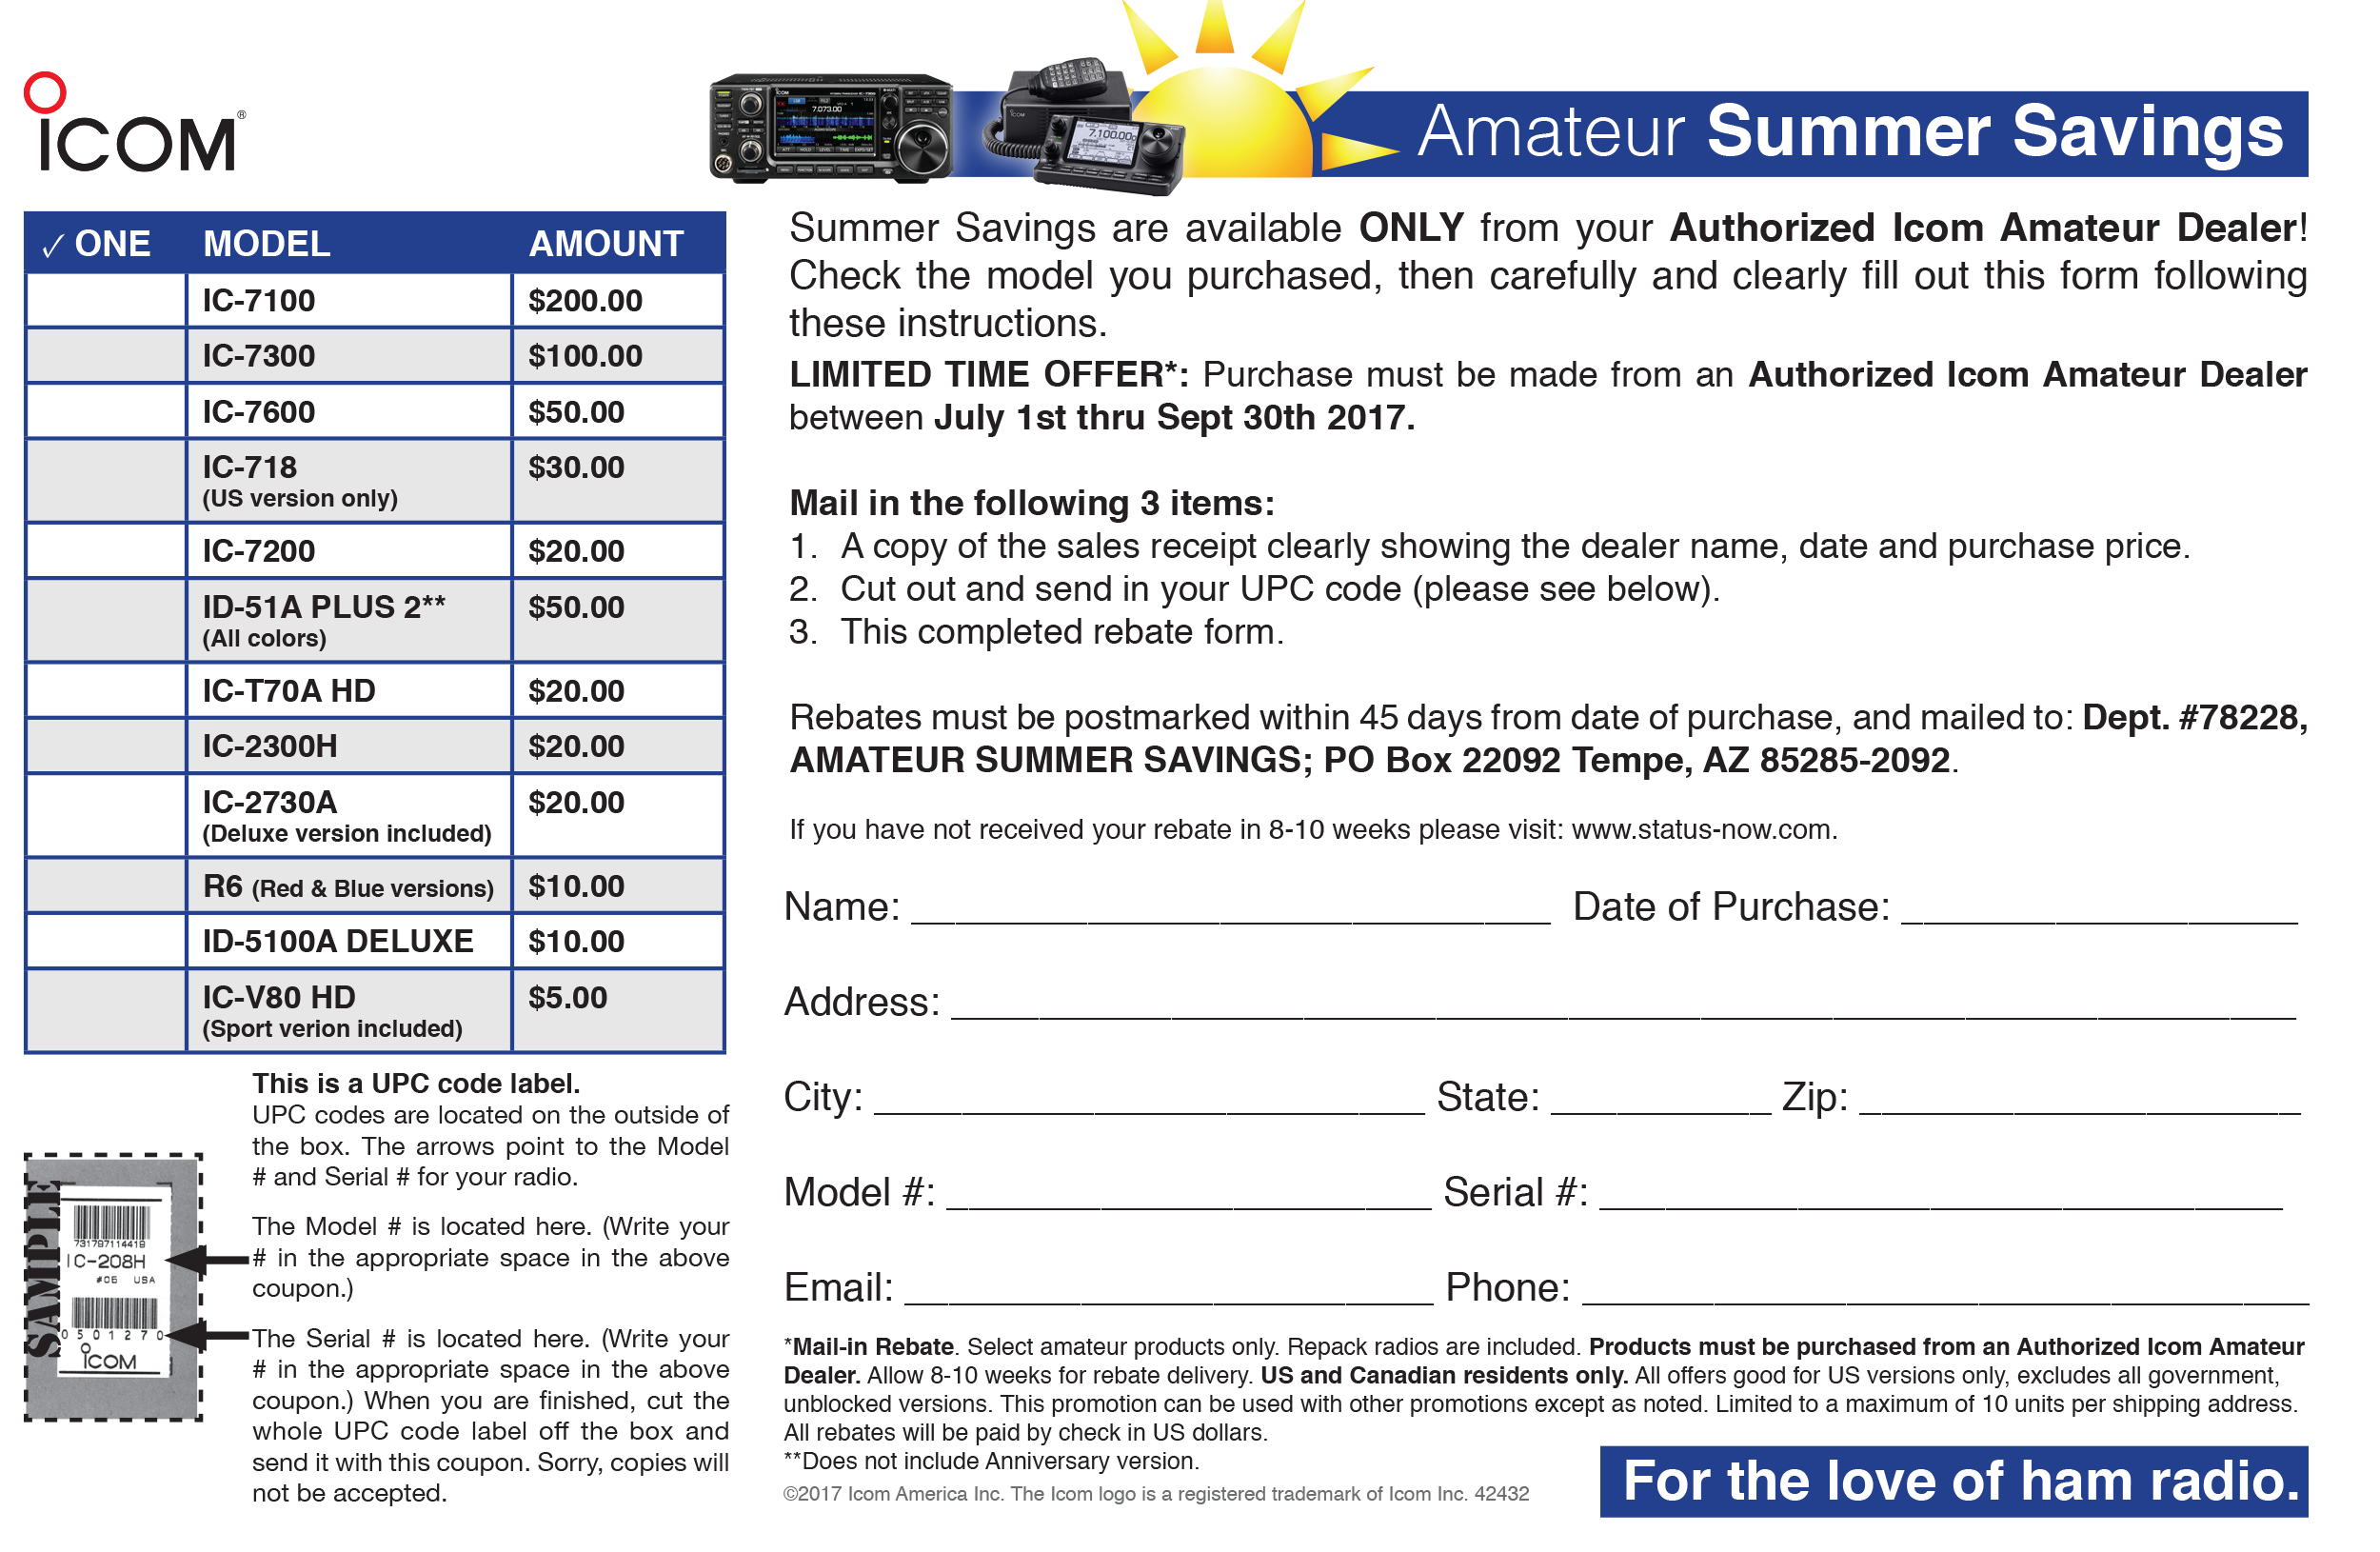 icom-amateur-summer-savings-rebate-2017-radioworld